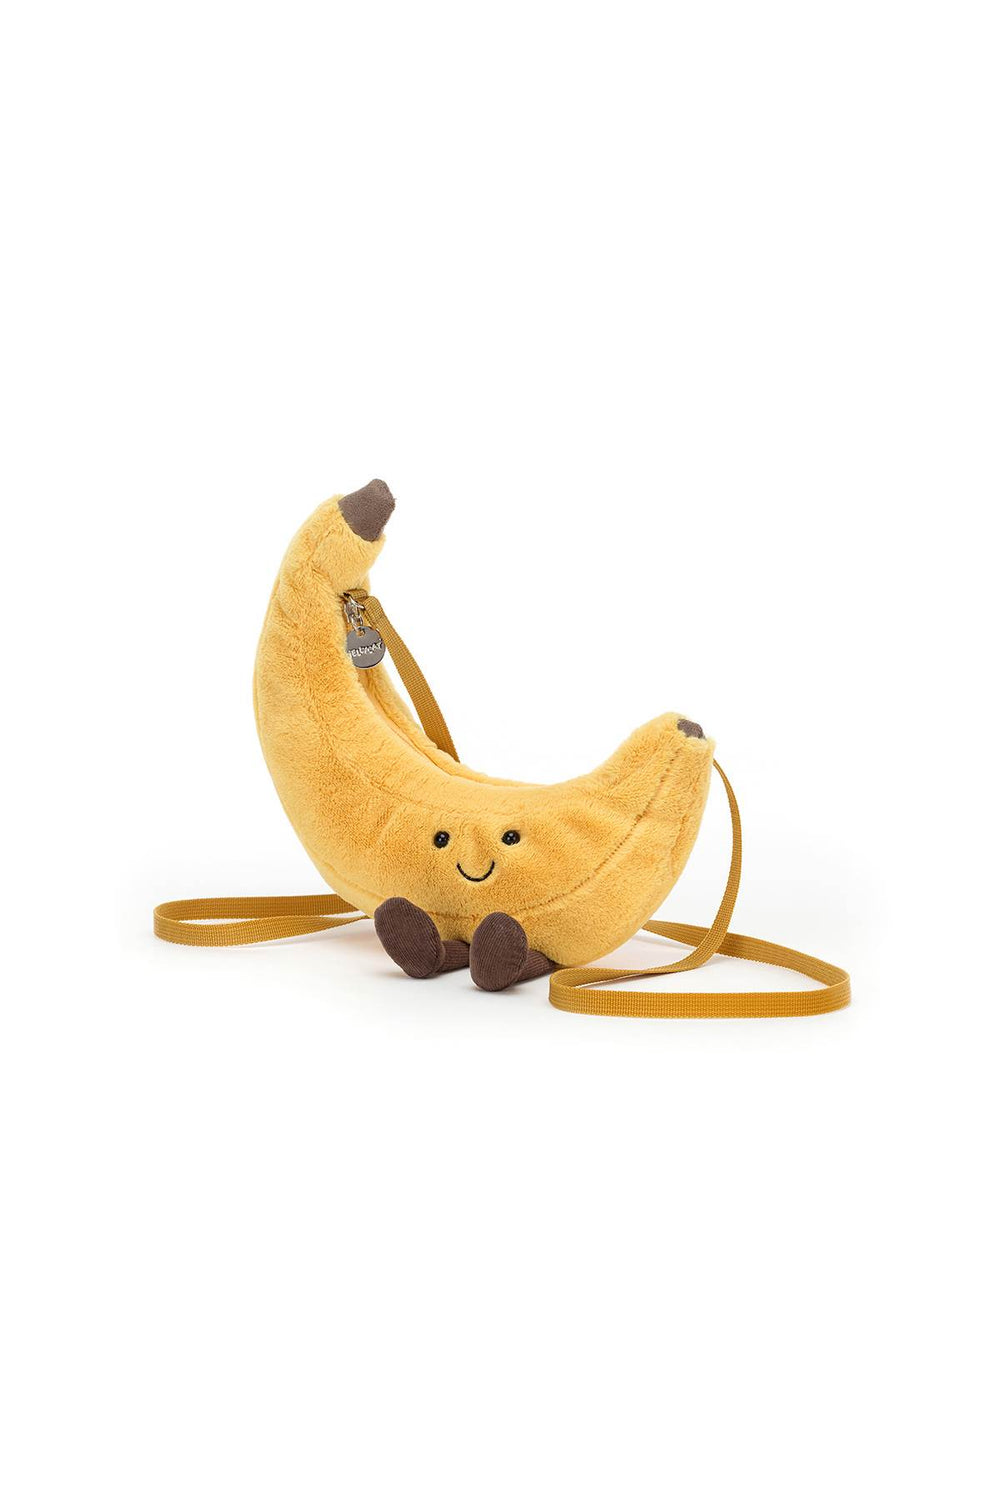 plush amuseables banana-1